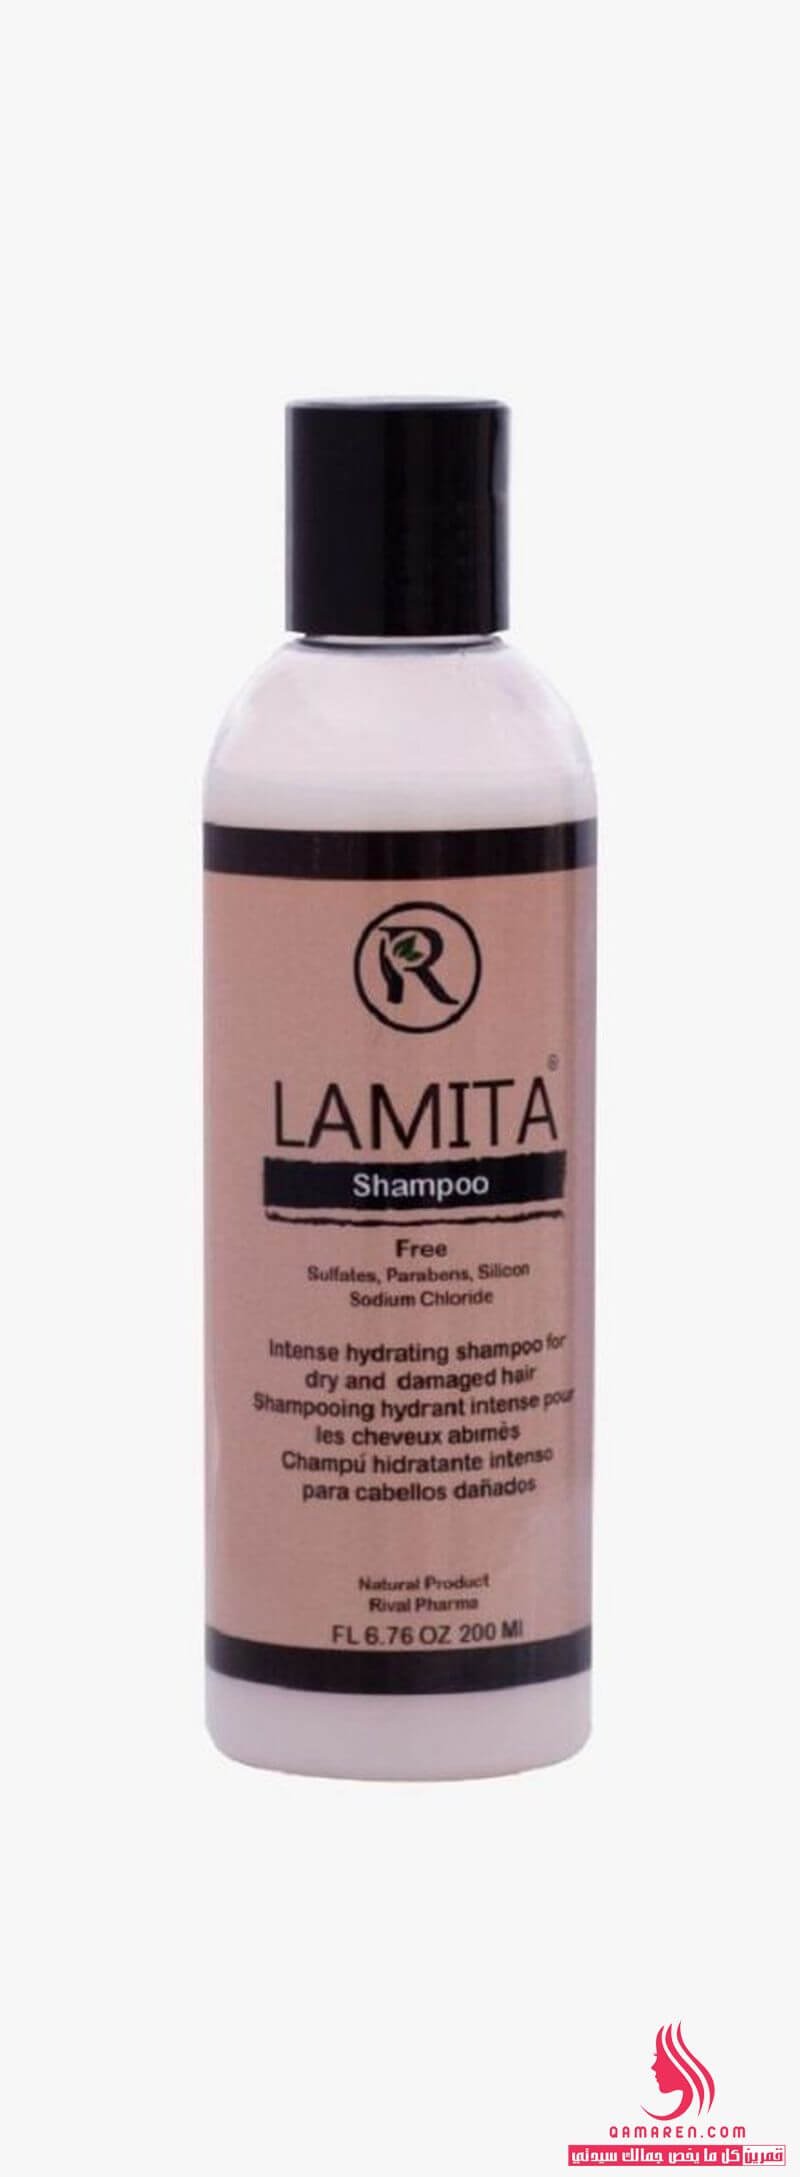 شامبو لاميتا Lamita Shampoo